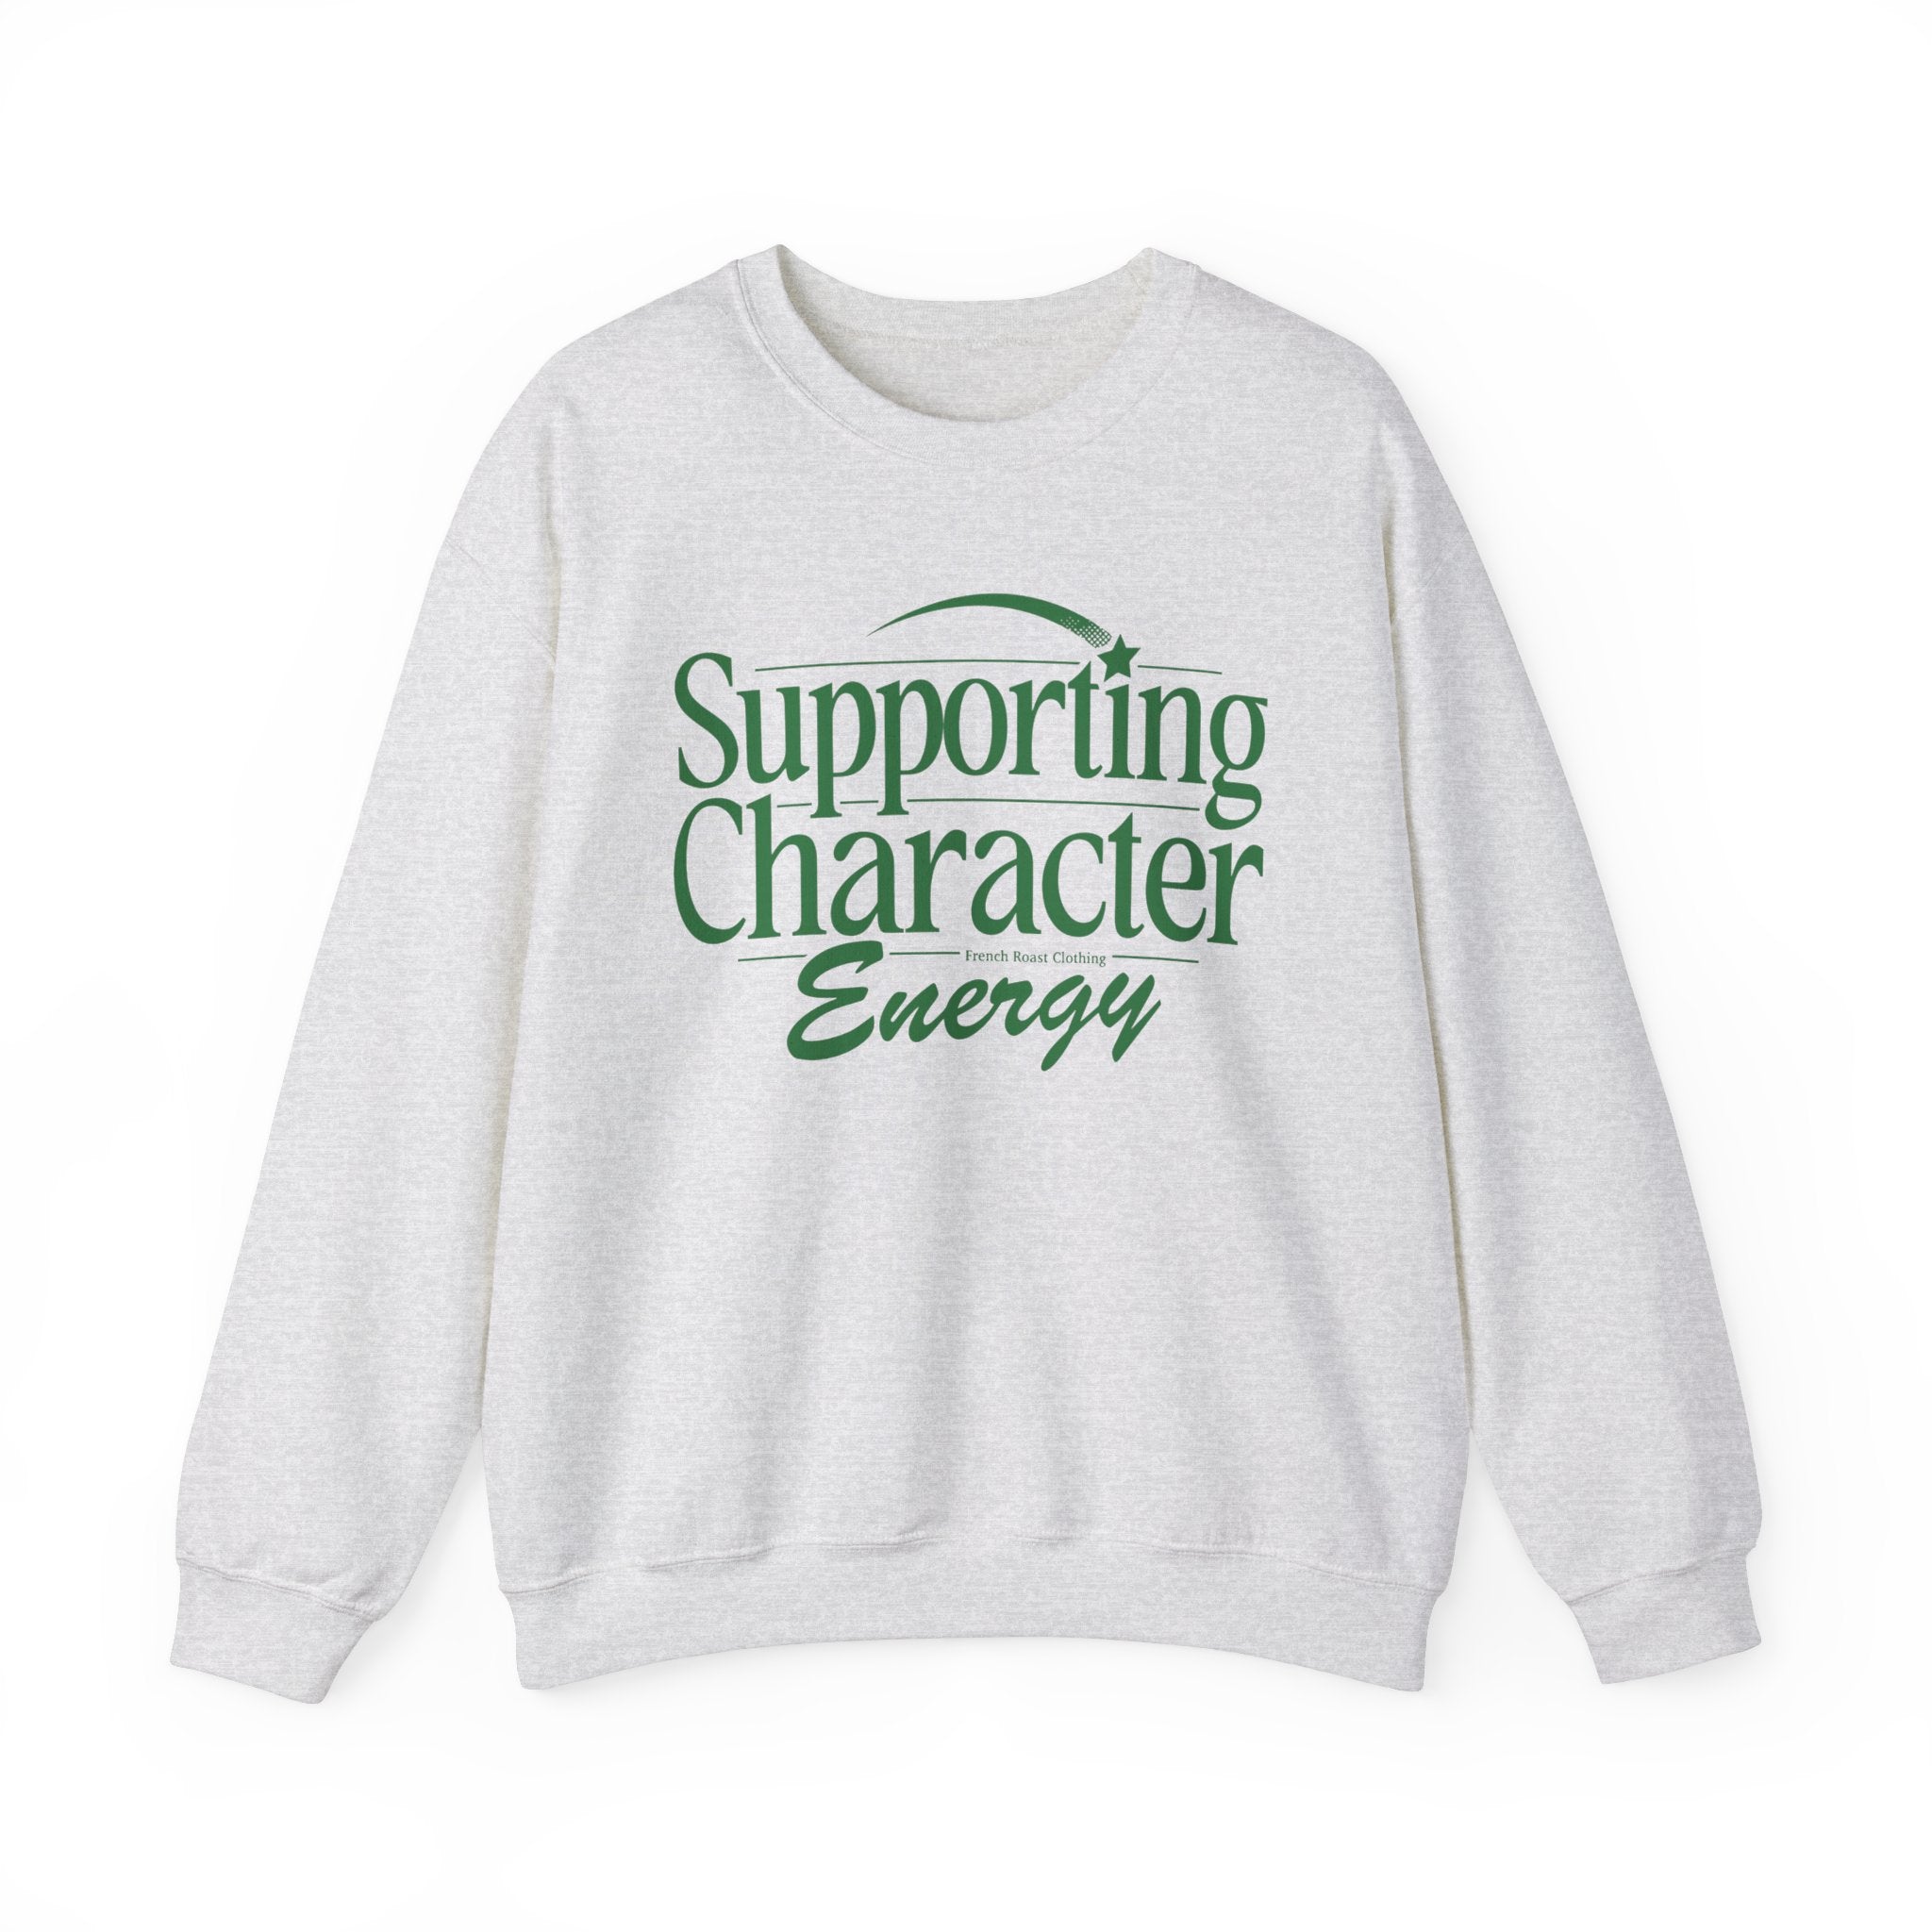 Supporting Character Energy Ash Grey Sweatshirt